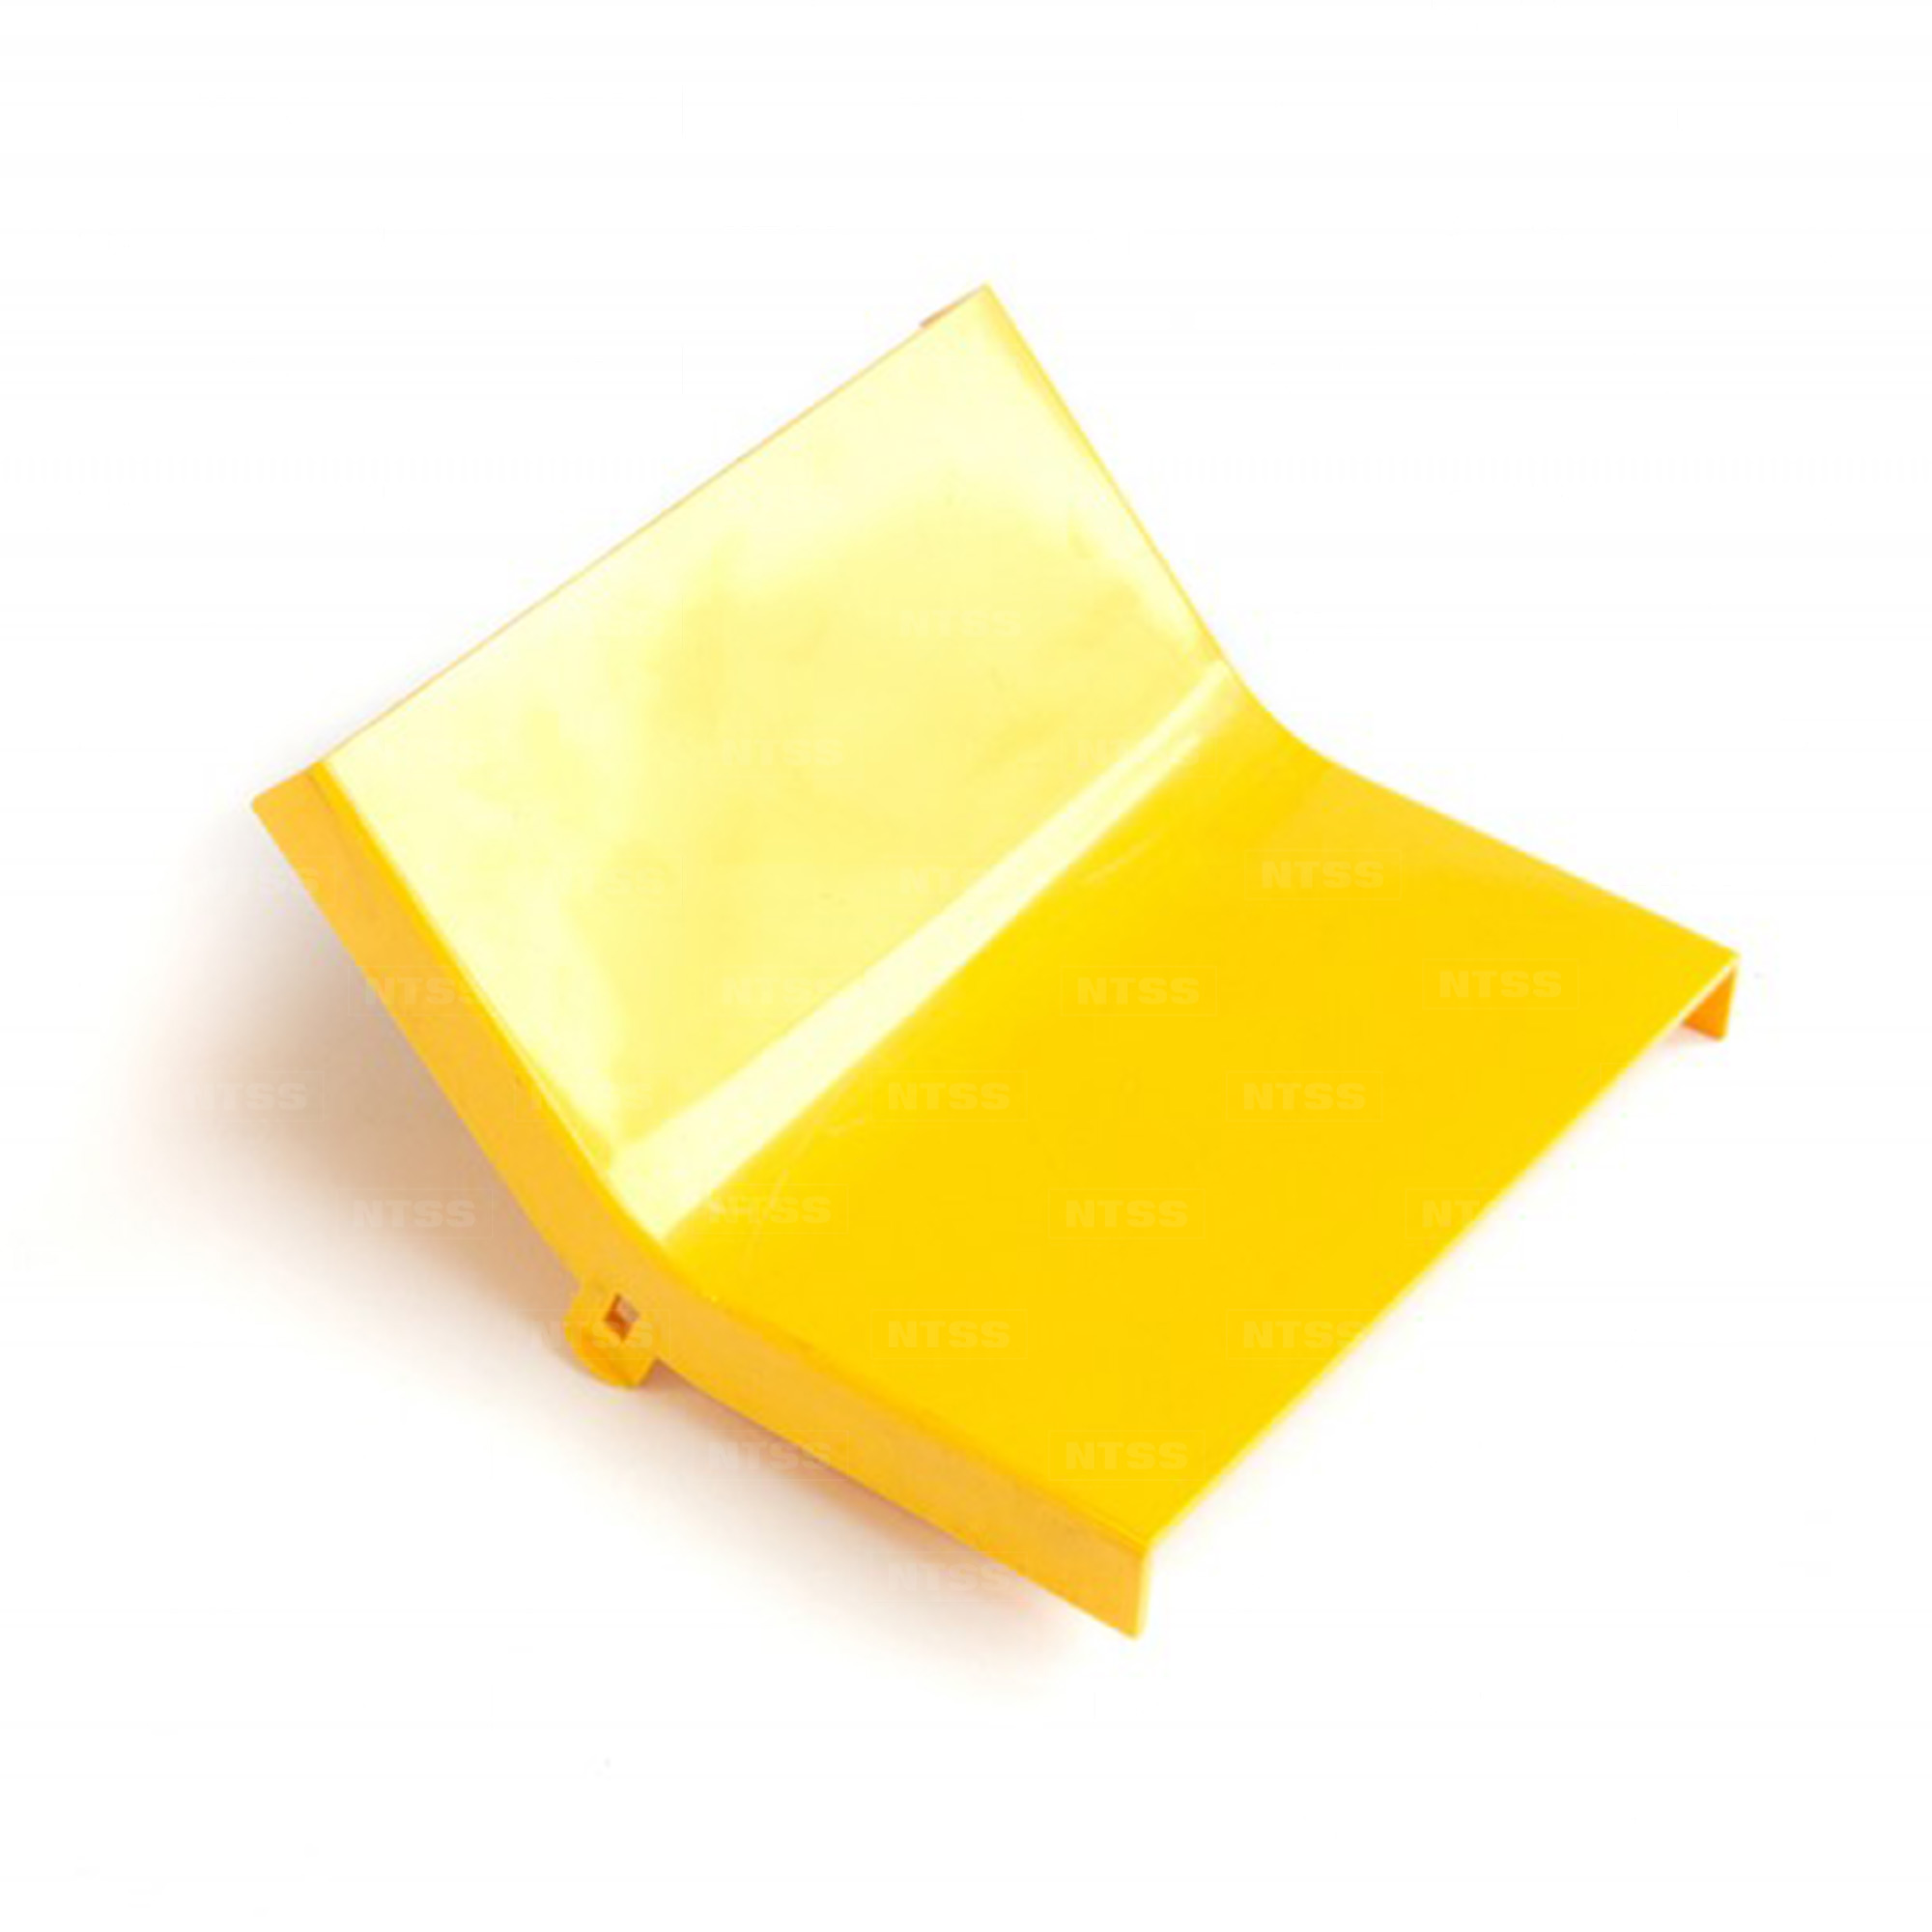 Крышка подъема 45° оптического лотка 240 мм, желтая